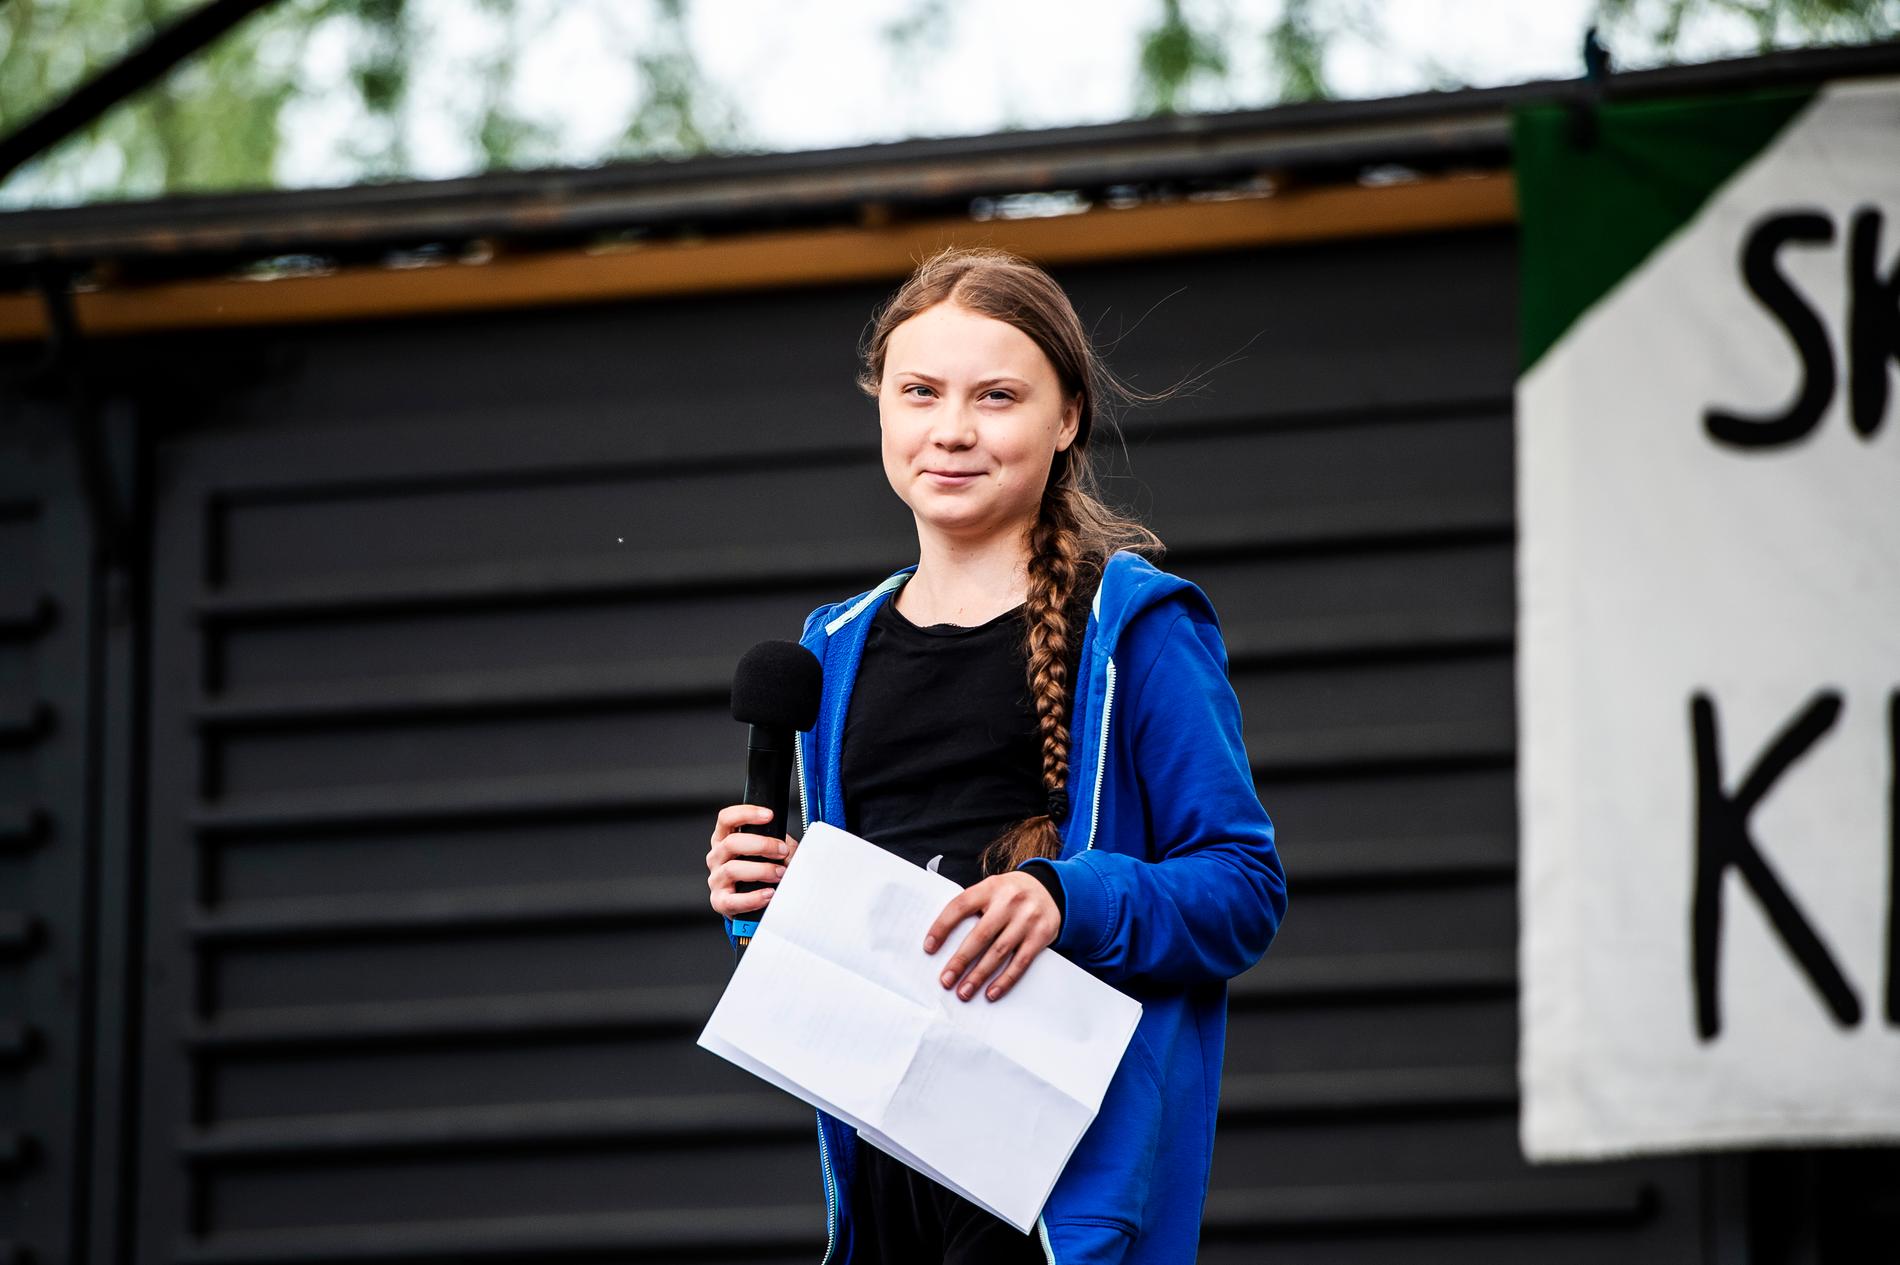 Ungdomsrörelsen Fridays For Future arrangerade i maj en global skolstrejk för klimatet med Greta Thunberg i spetsen.